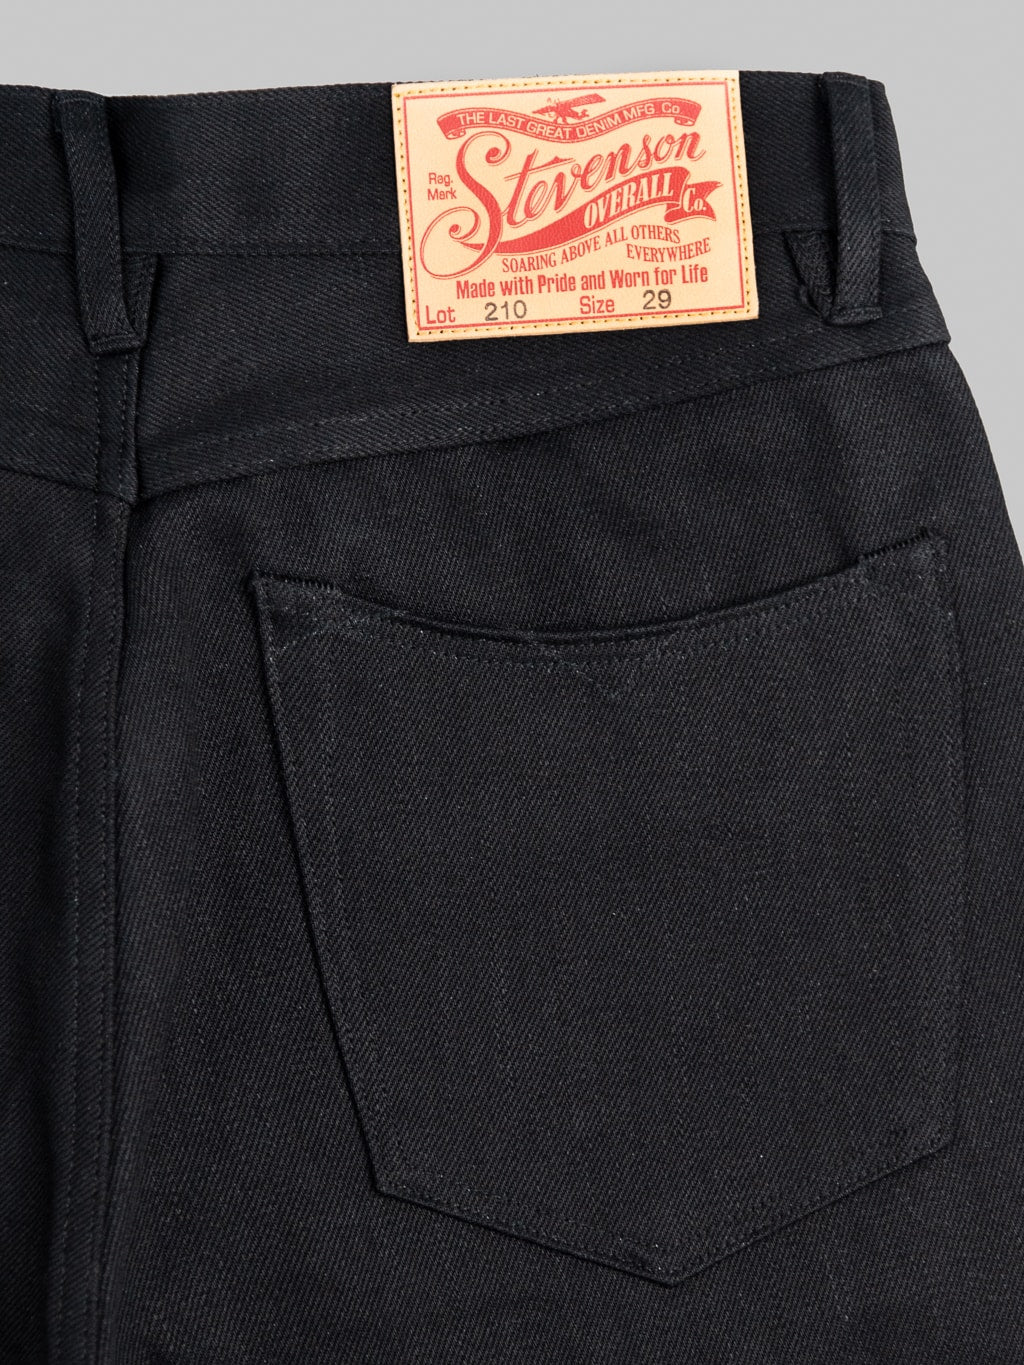 Stevenson Overall Big Sur 210 12oz Slim Tapered jeans solid black detail